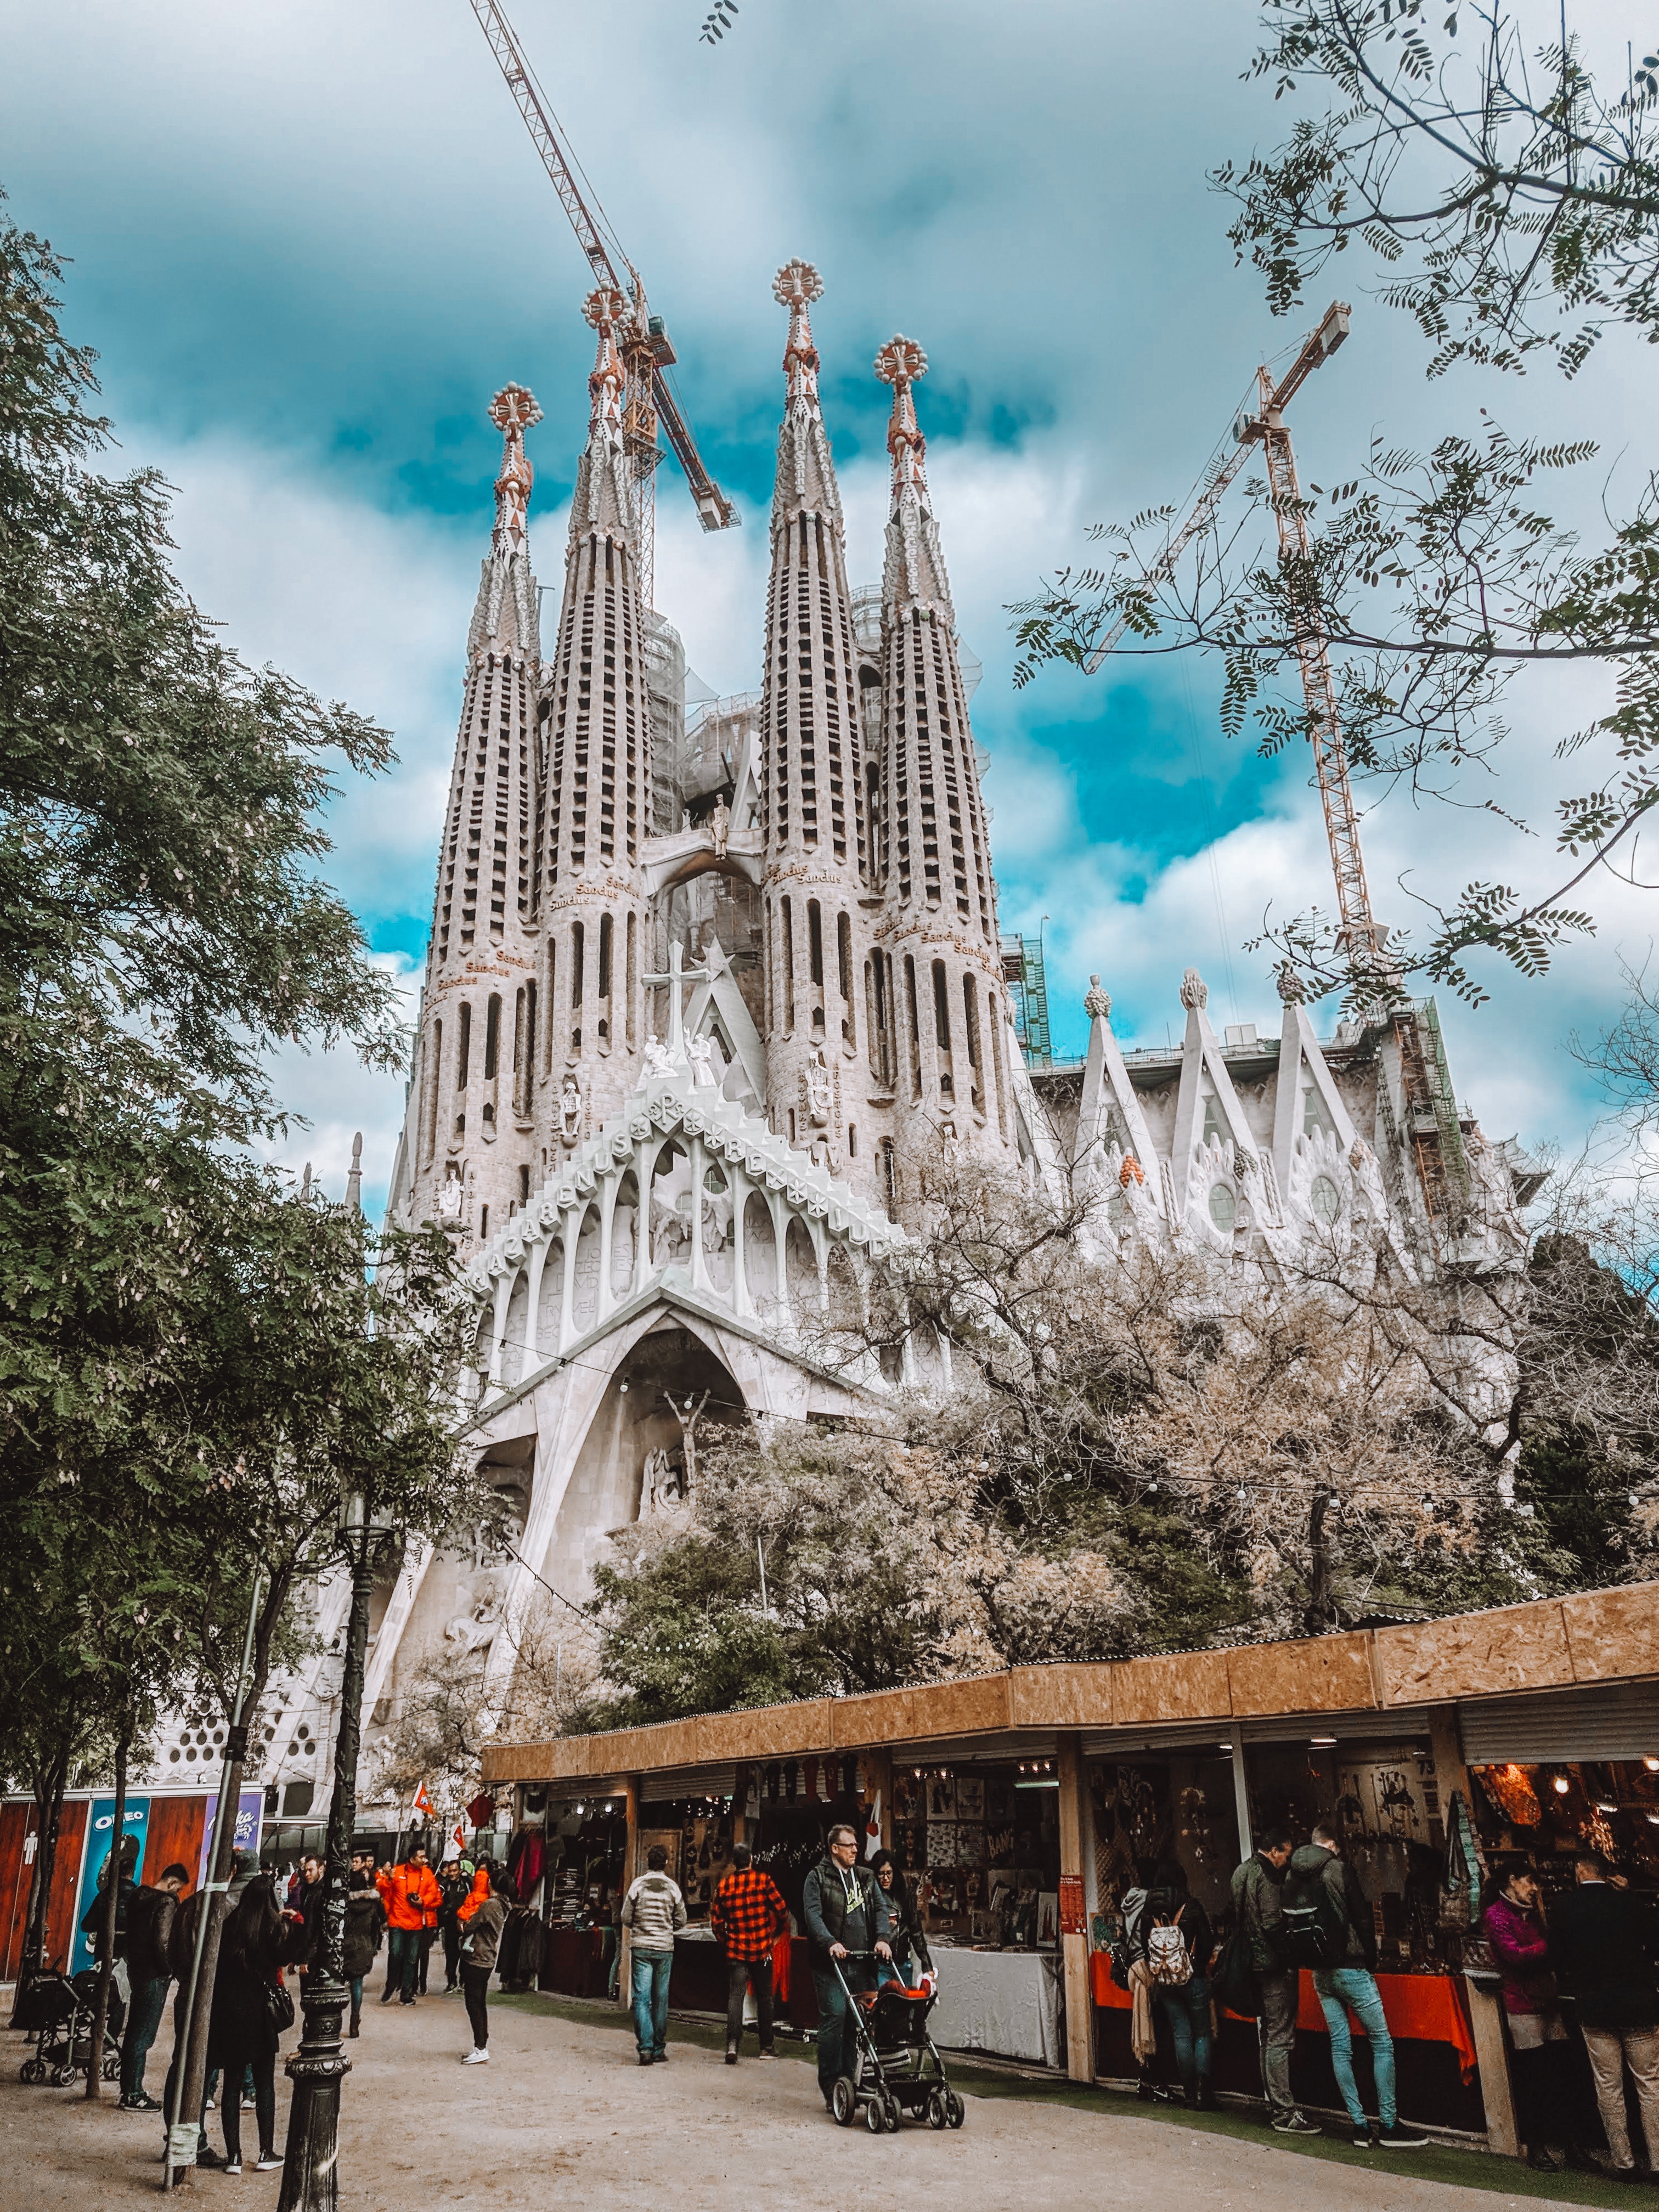 Monumento religioso la Sagrada Familia, icono arquitectonico de Barcelona